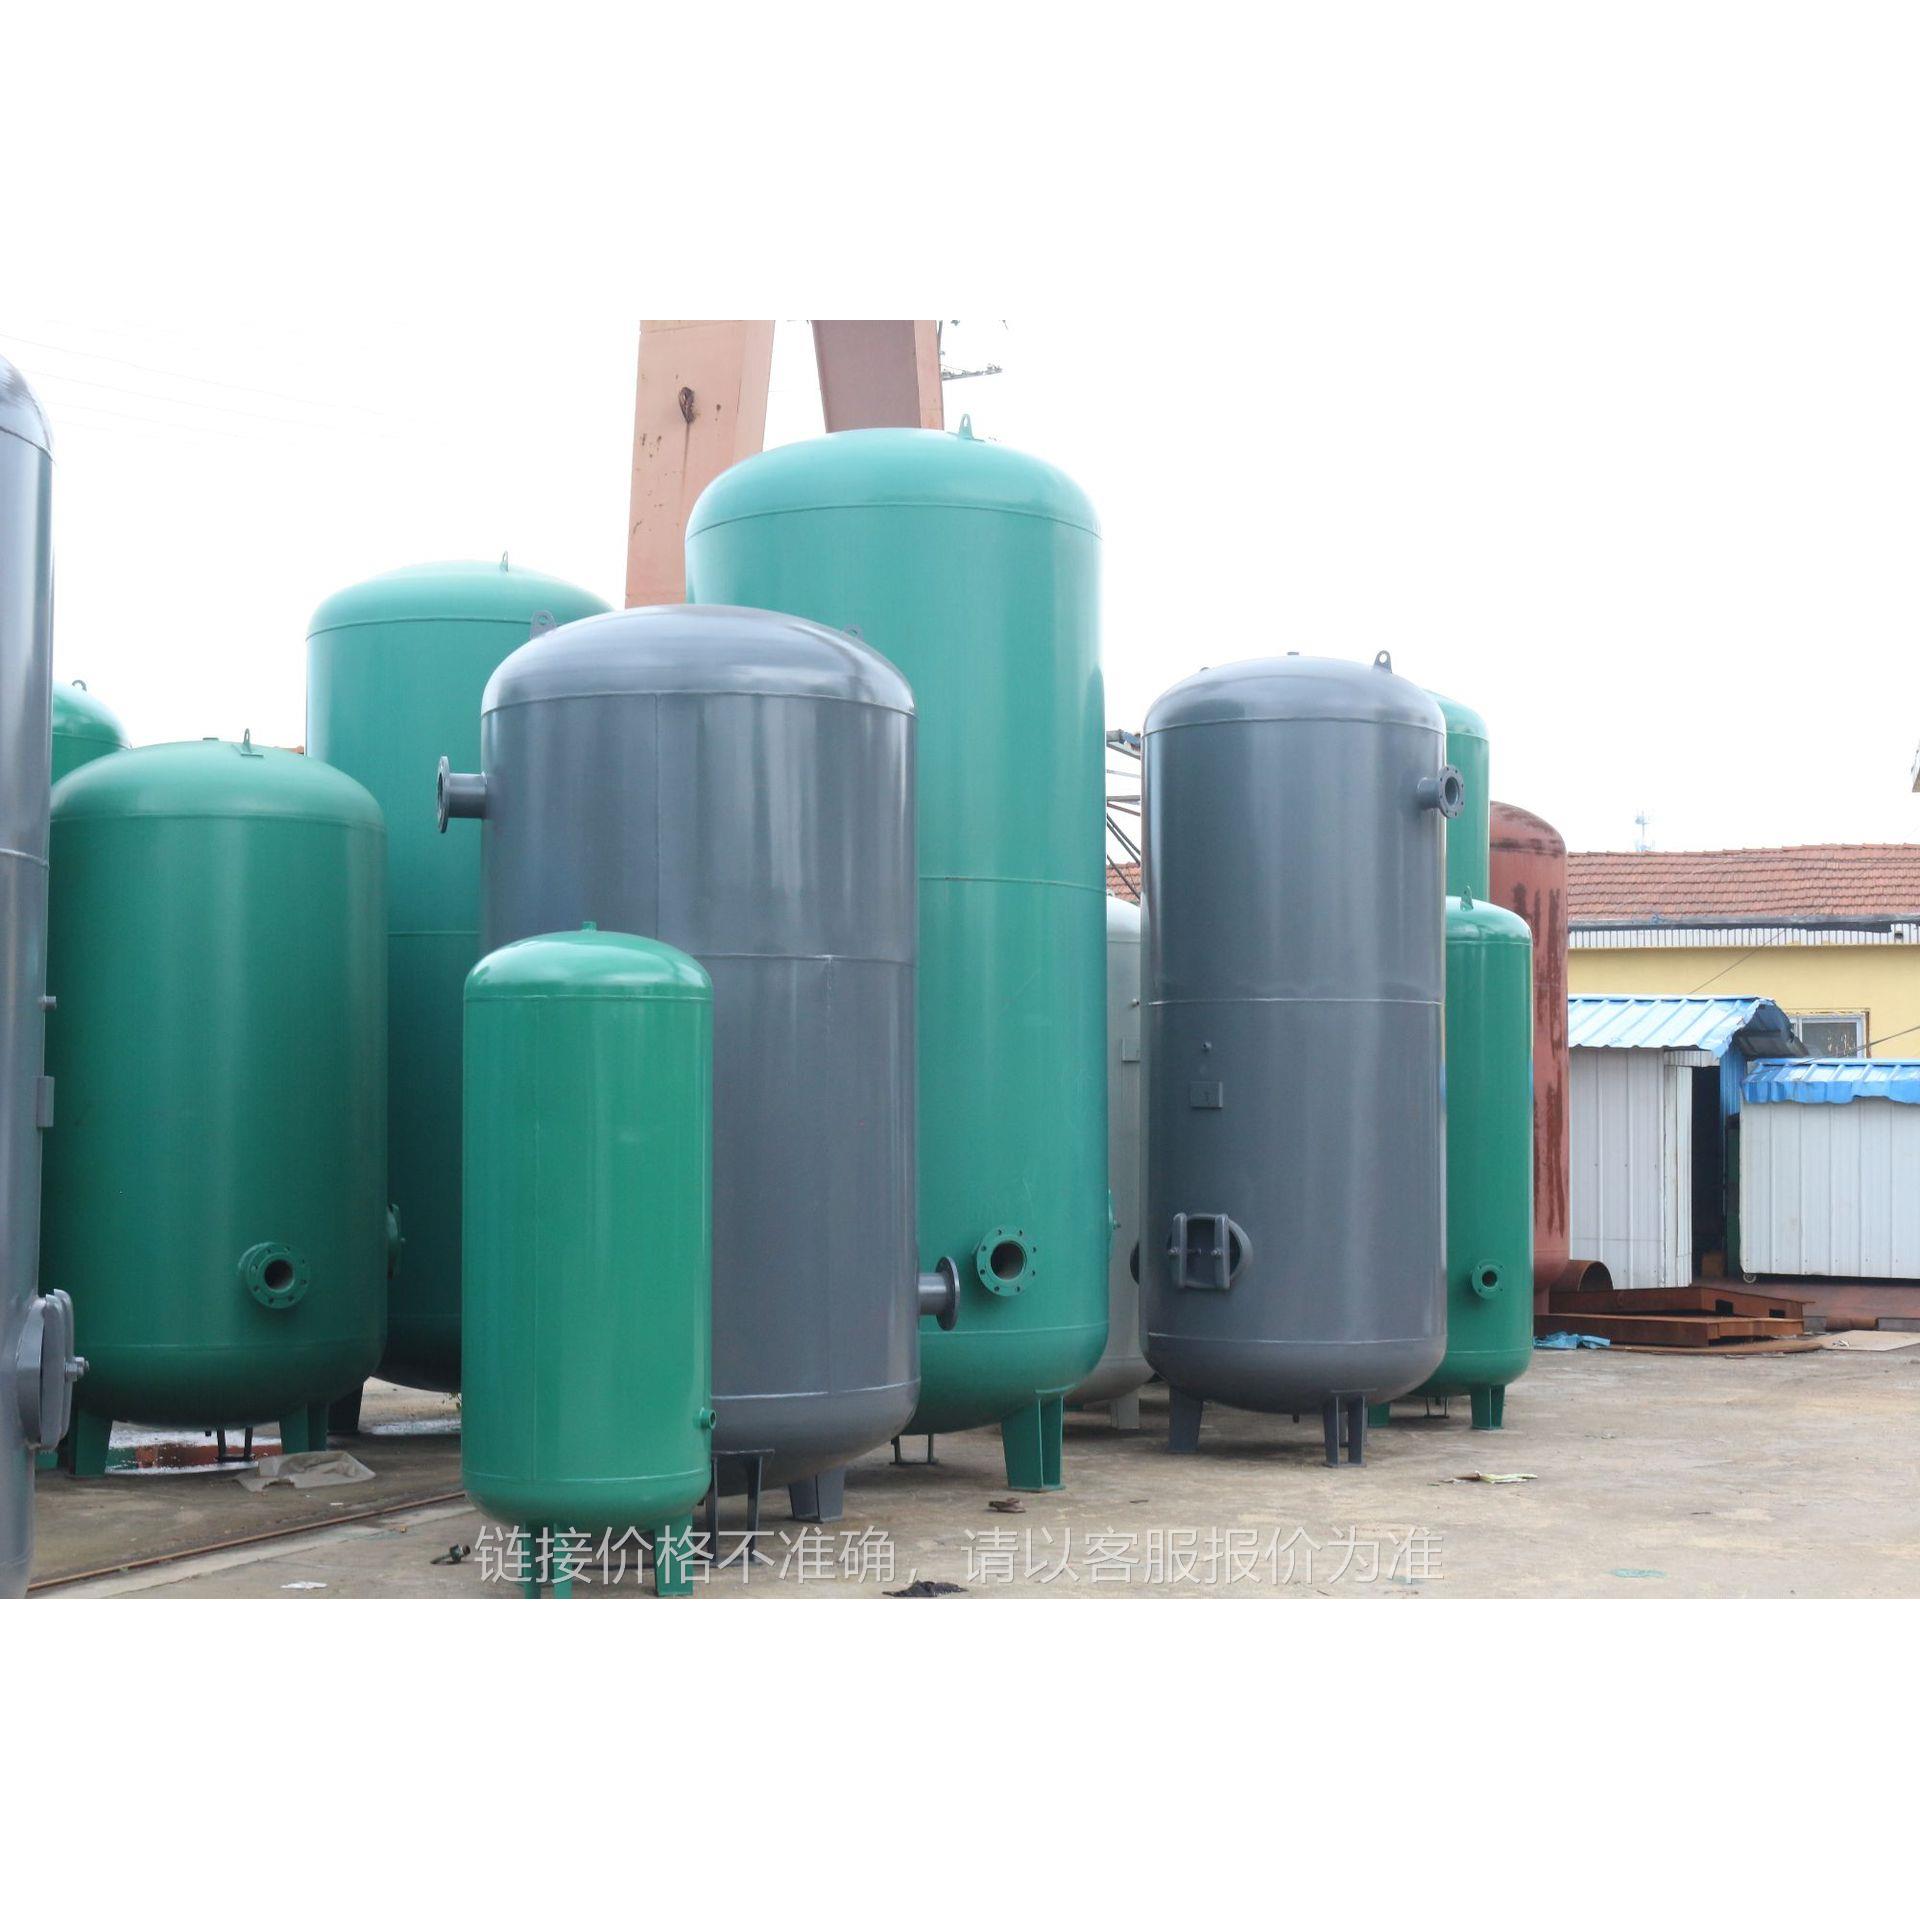 储气罐 化工储罐青岛厂家生产不锈钢储气罐压力容器定制